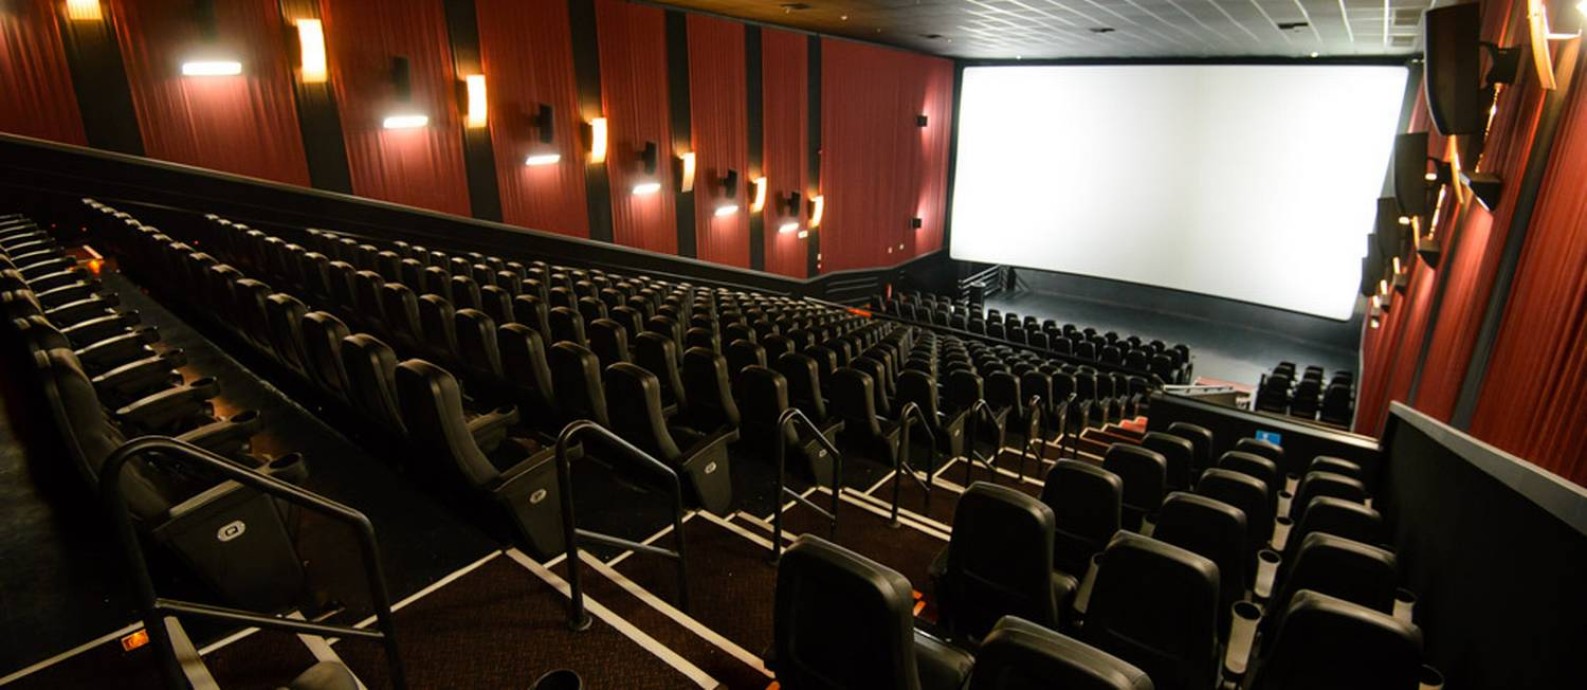 Sala de cinema no Rio: estado ganhou 26 salas desde 2017 Foto: Divulgação